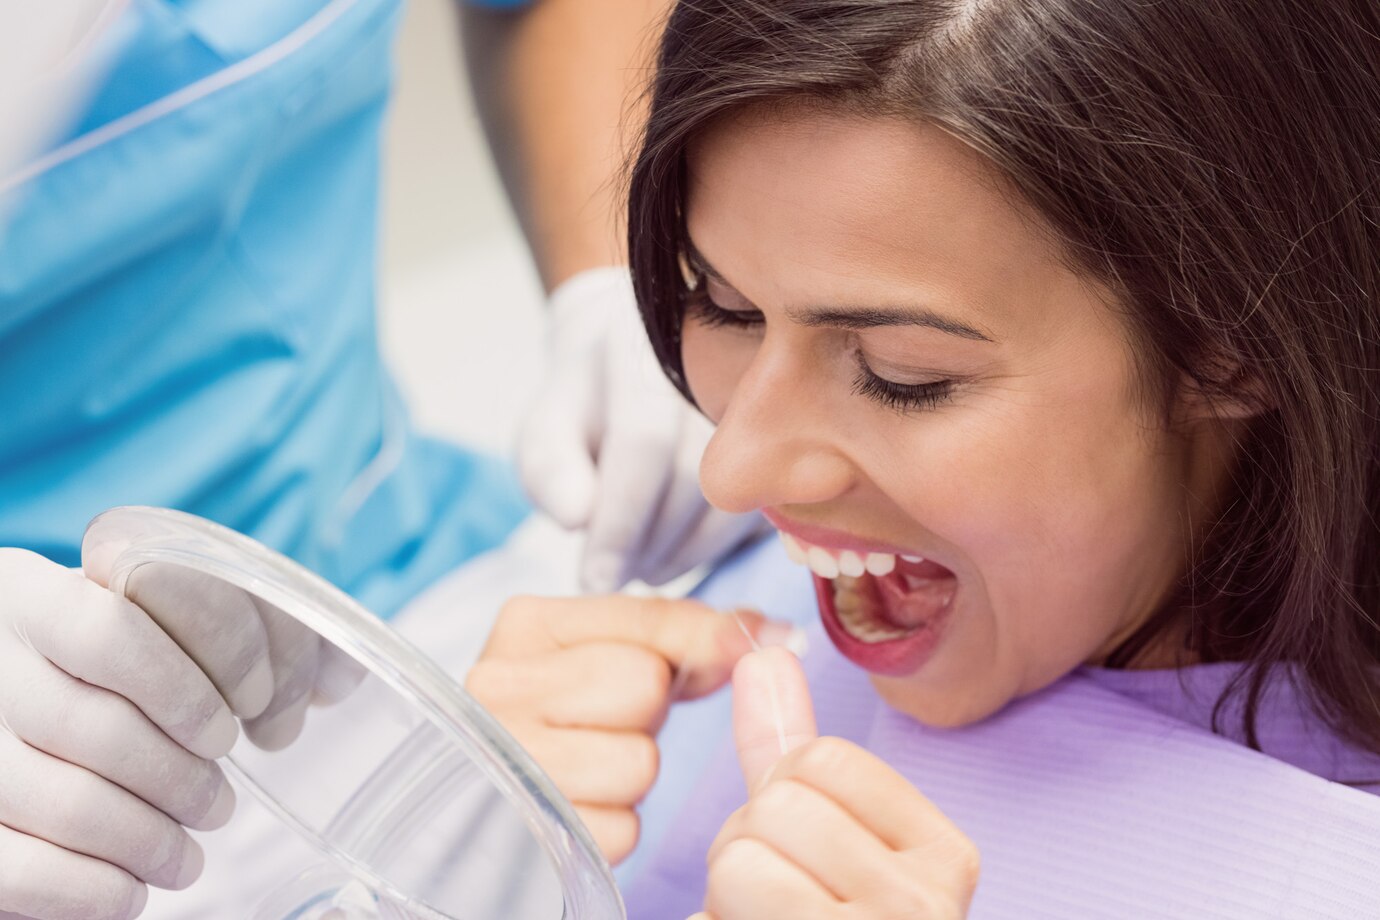 female-patient-flossing-her-teeth_107420-65474